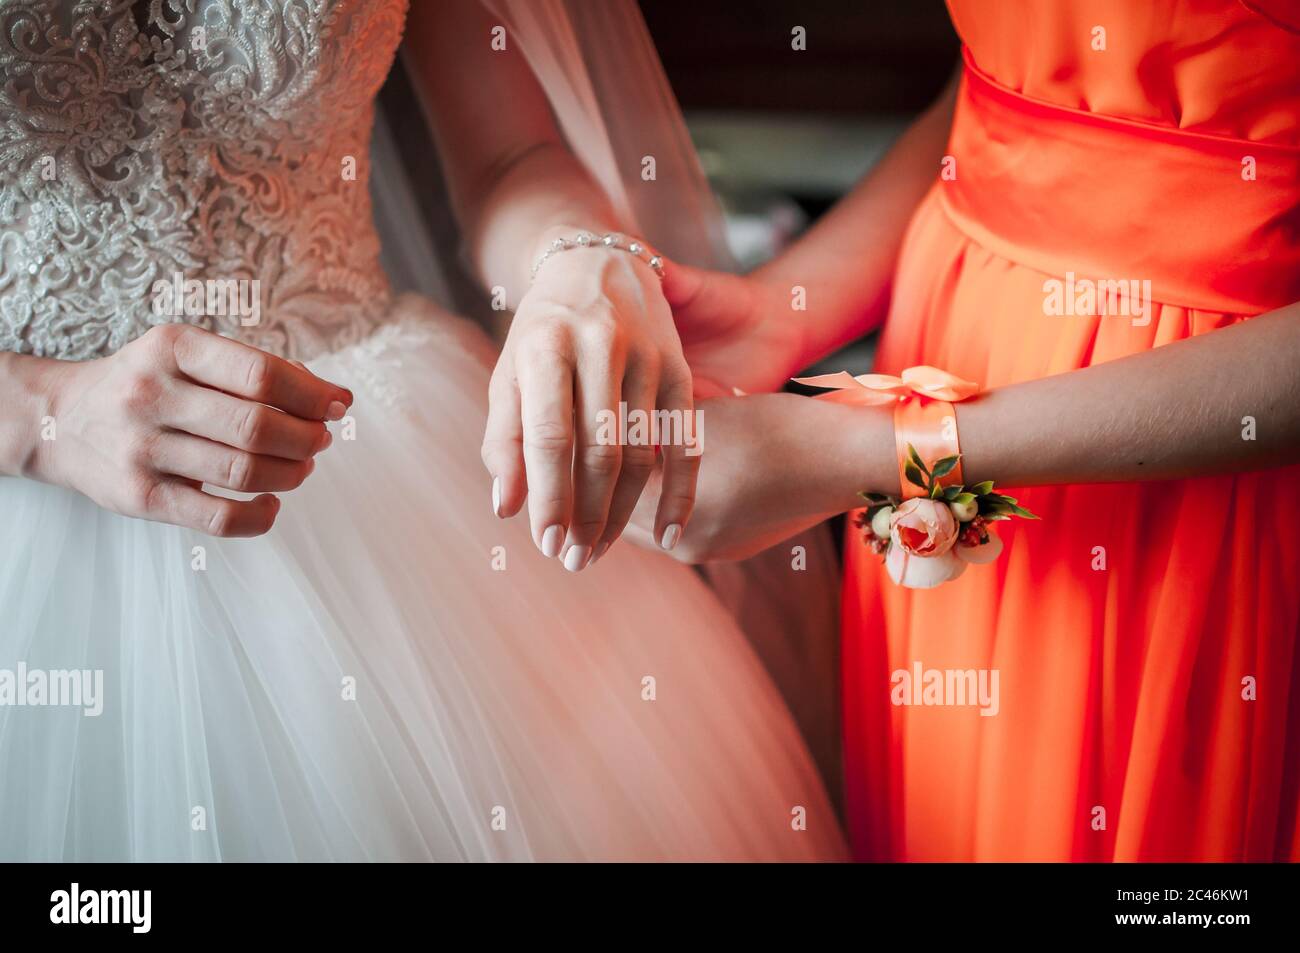 La demoiselle d'honneur en robe orange aide la mariée à porter un bracelet Banque D'Images